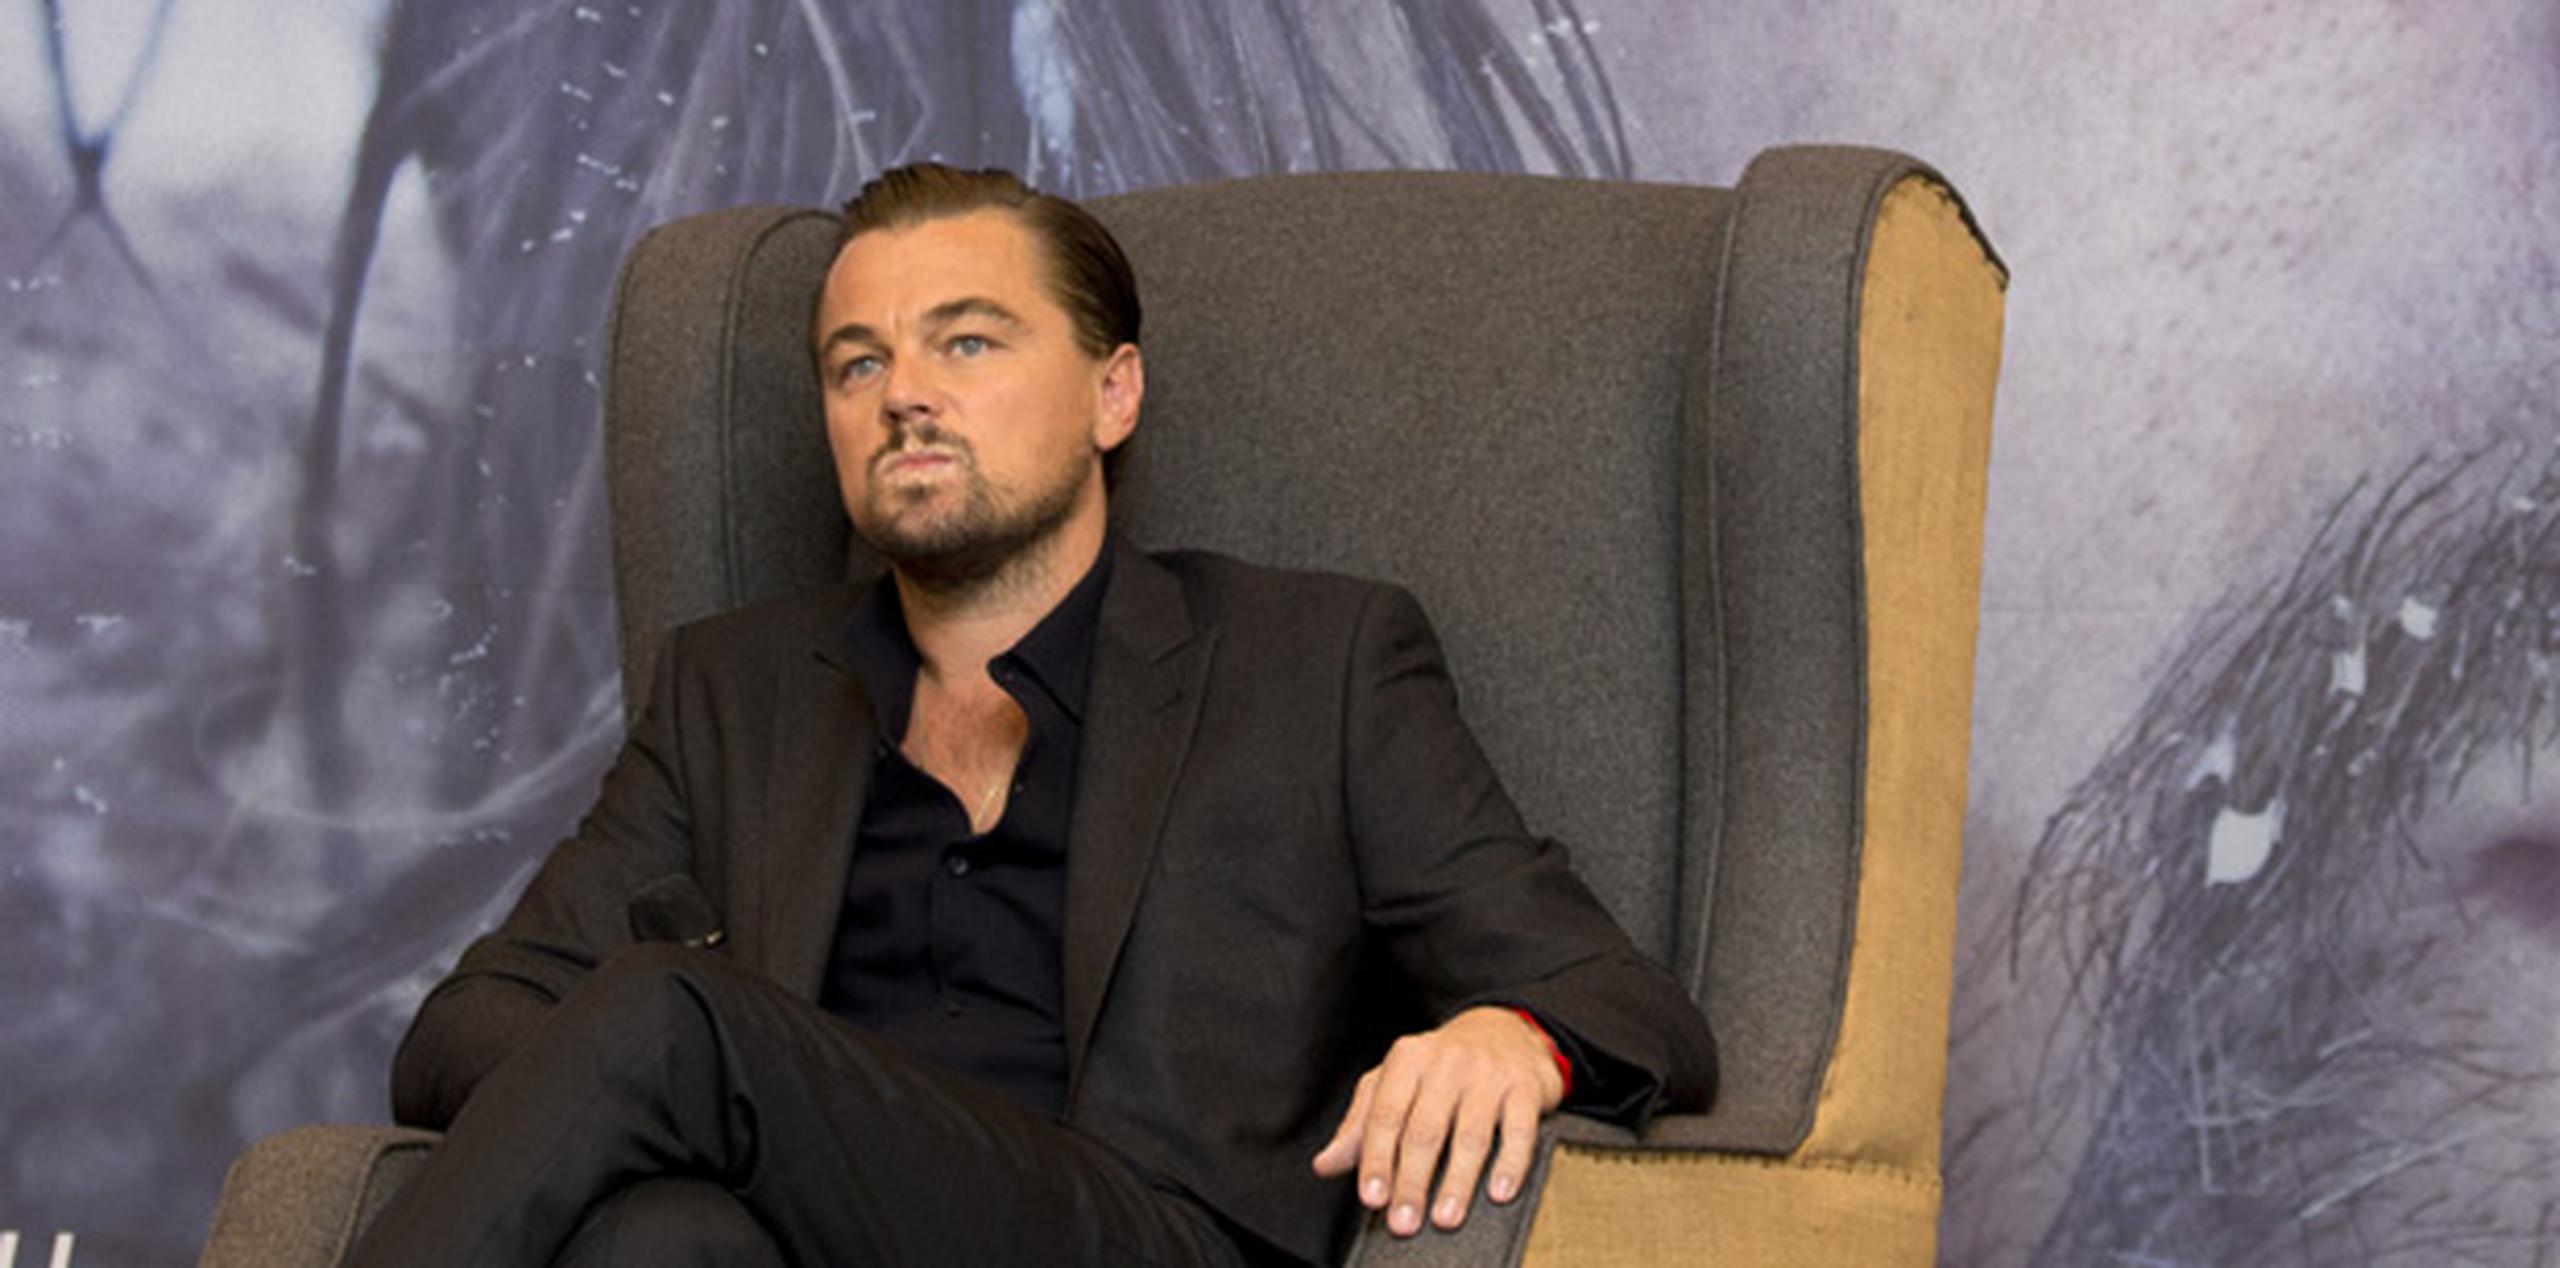 DiCaprio, nominado a un Oscar por su papel en "The Revenant", es desde hace tiempo un activista medioambiental. (AP)